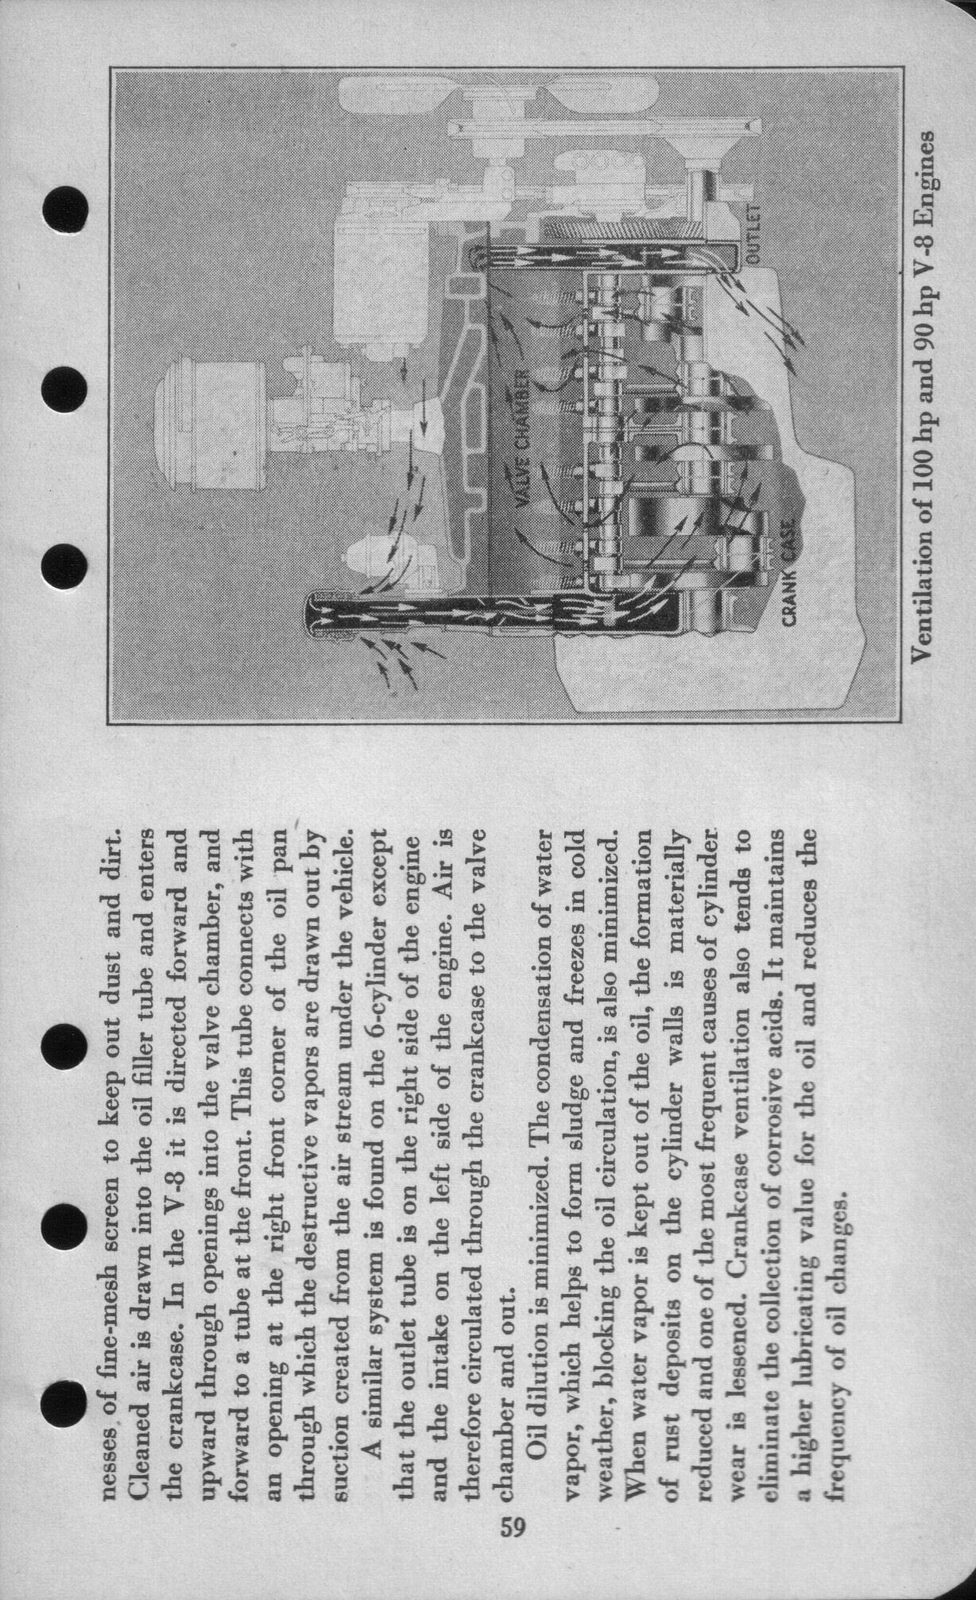 n_1942 Ford Salesmans Reference Manual-059.jpg